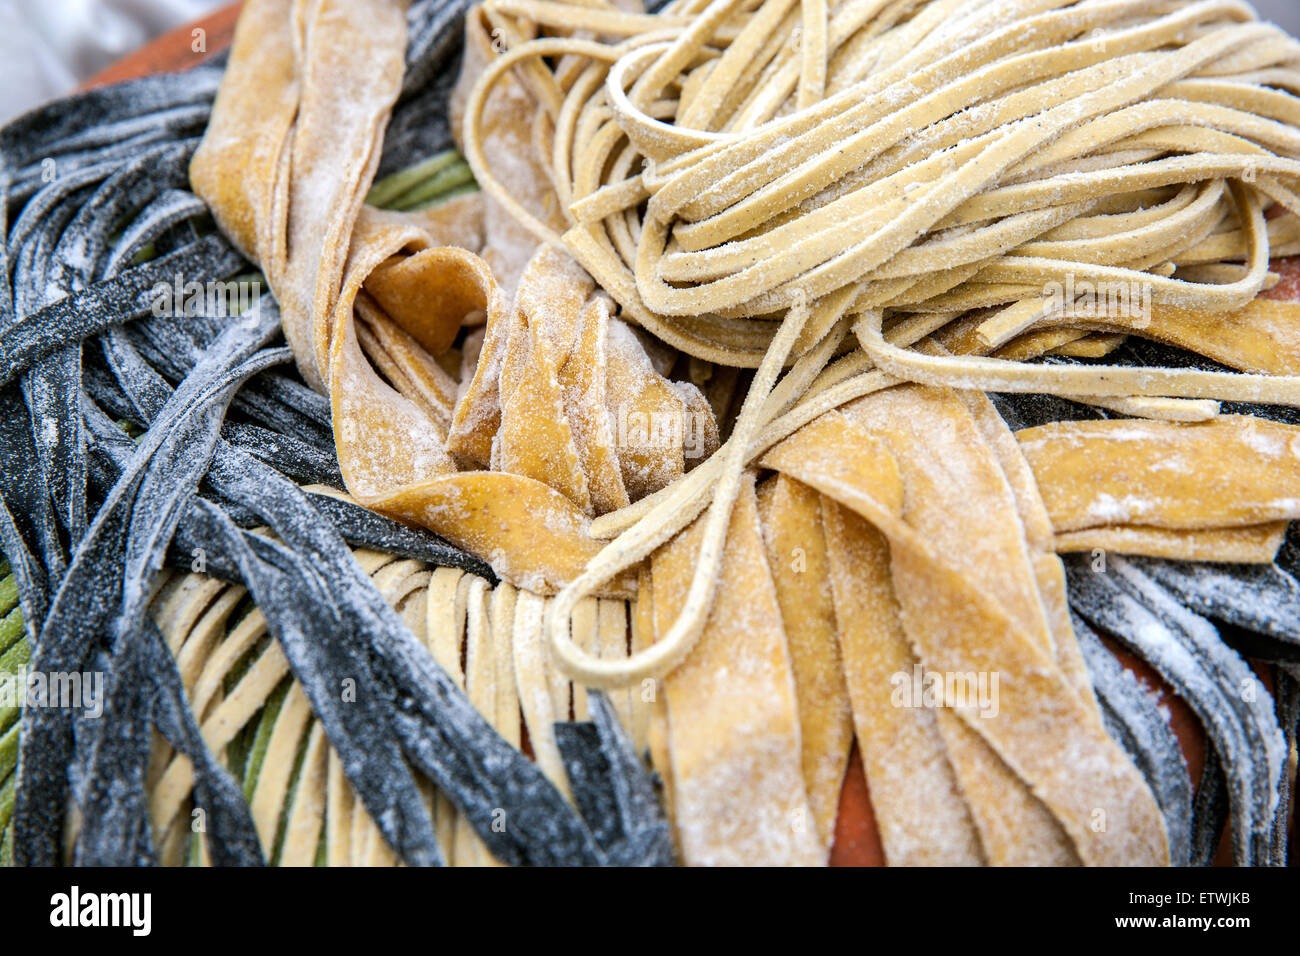 Las pastas italianas, alimentos orgánicos, hechos a mano, Foto de stock